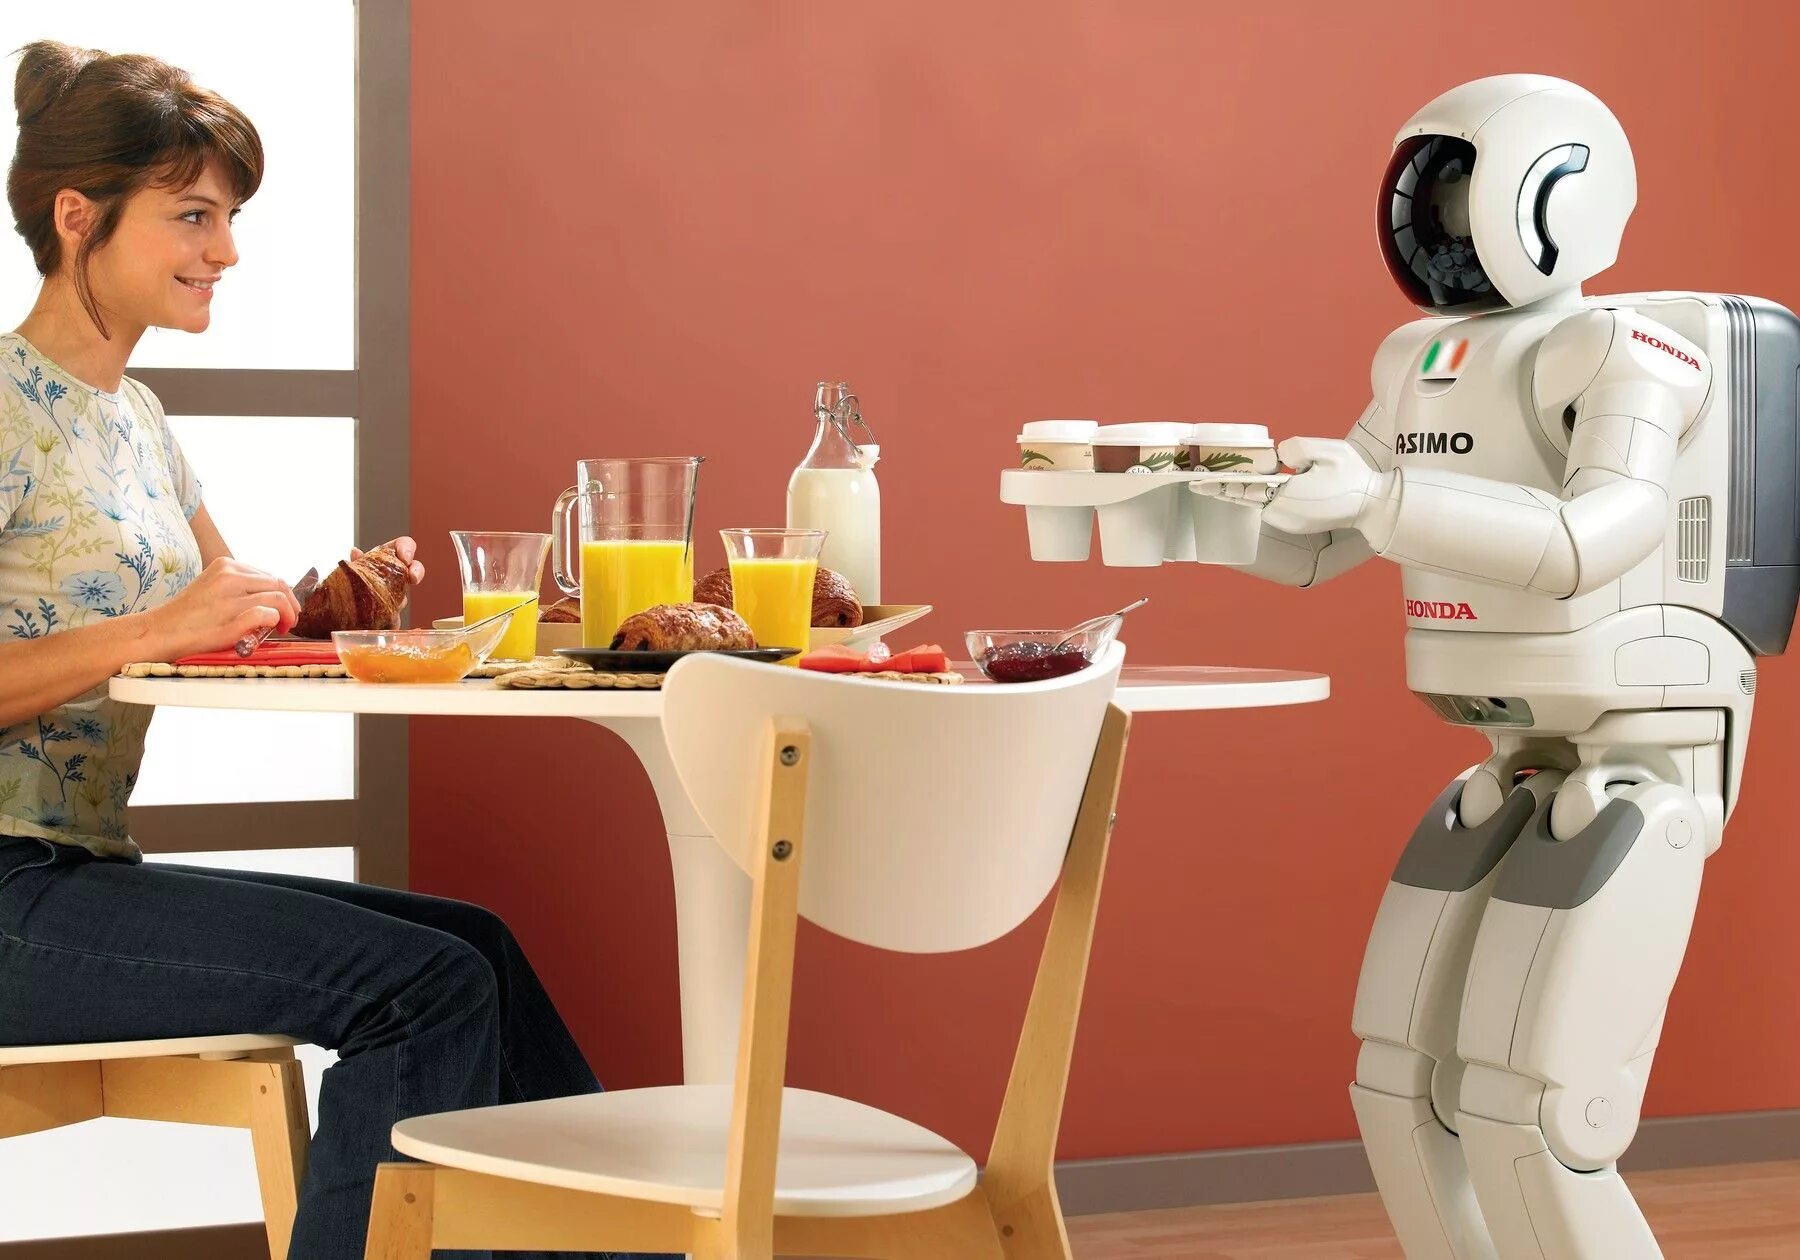 Робаты. Роботы-помощники. Бытовые роботы. Роботы помощники в быту. Роботы в повседневной жизни.